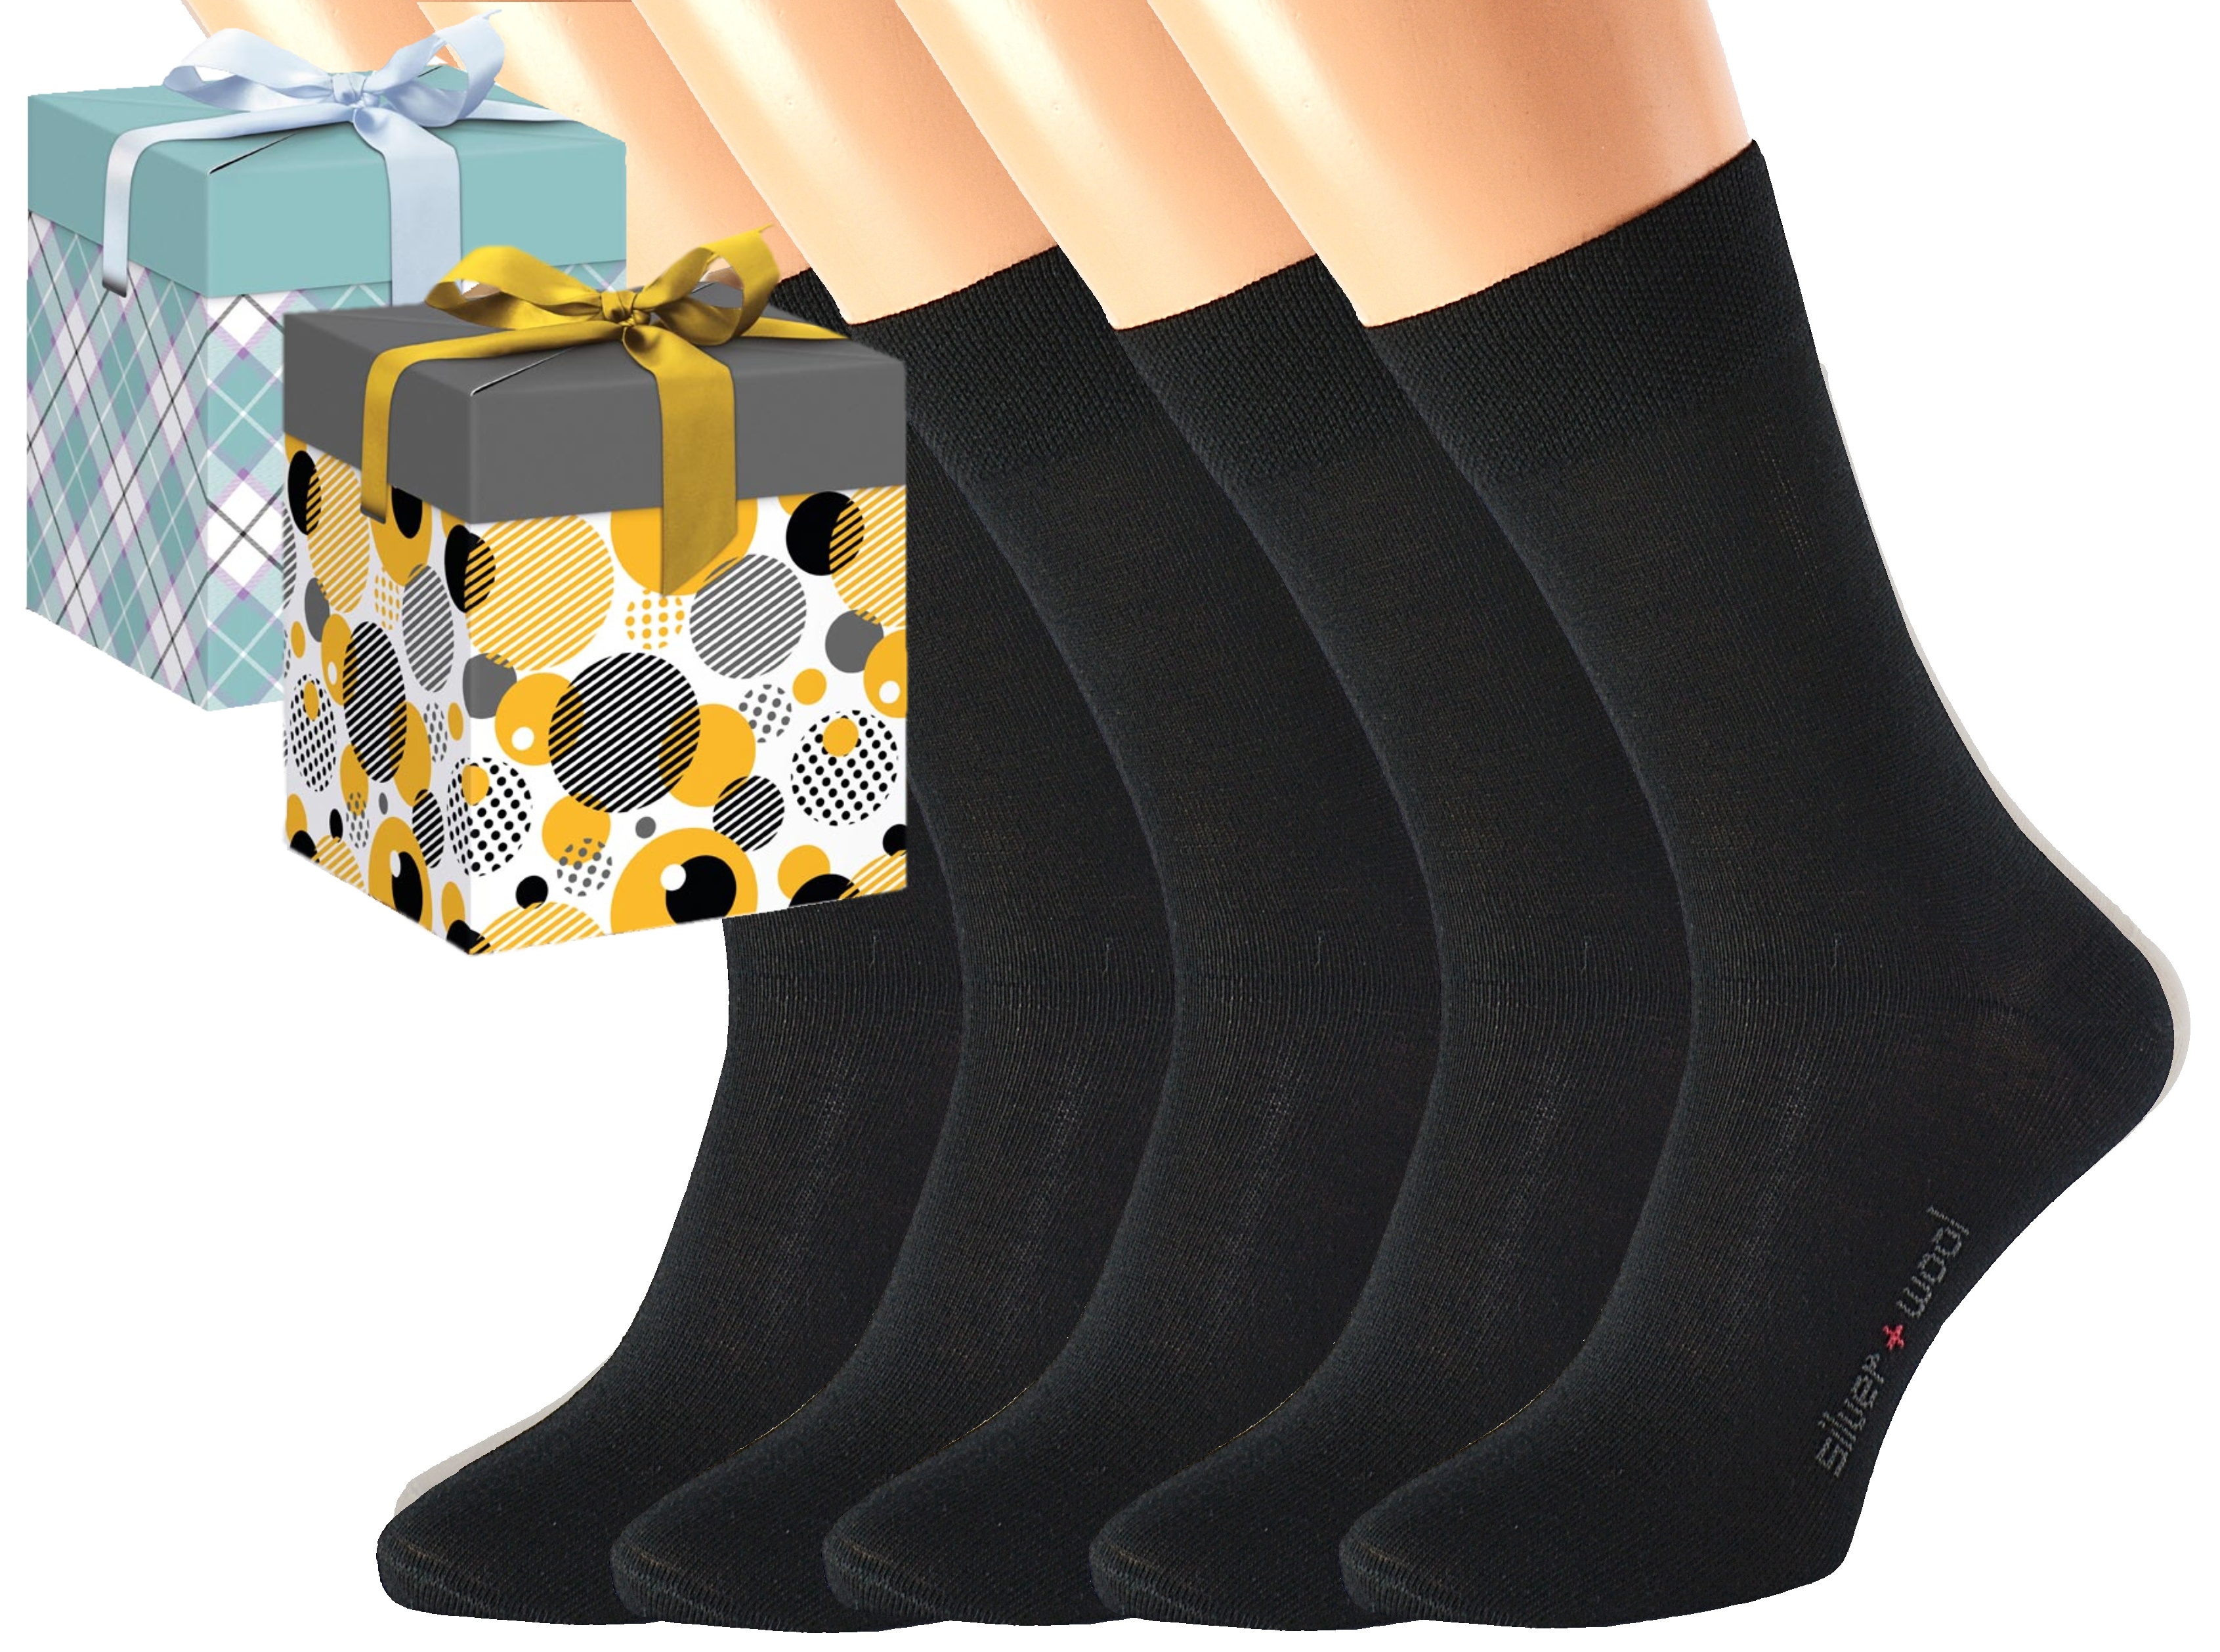 Dárkové balení 5 párů vlněných ponožek DAVID Barva: Černé, Velikost: EUR 46-48 (UK 11-12), Zvolte variantu dárkového balení: Mint kostkovaná